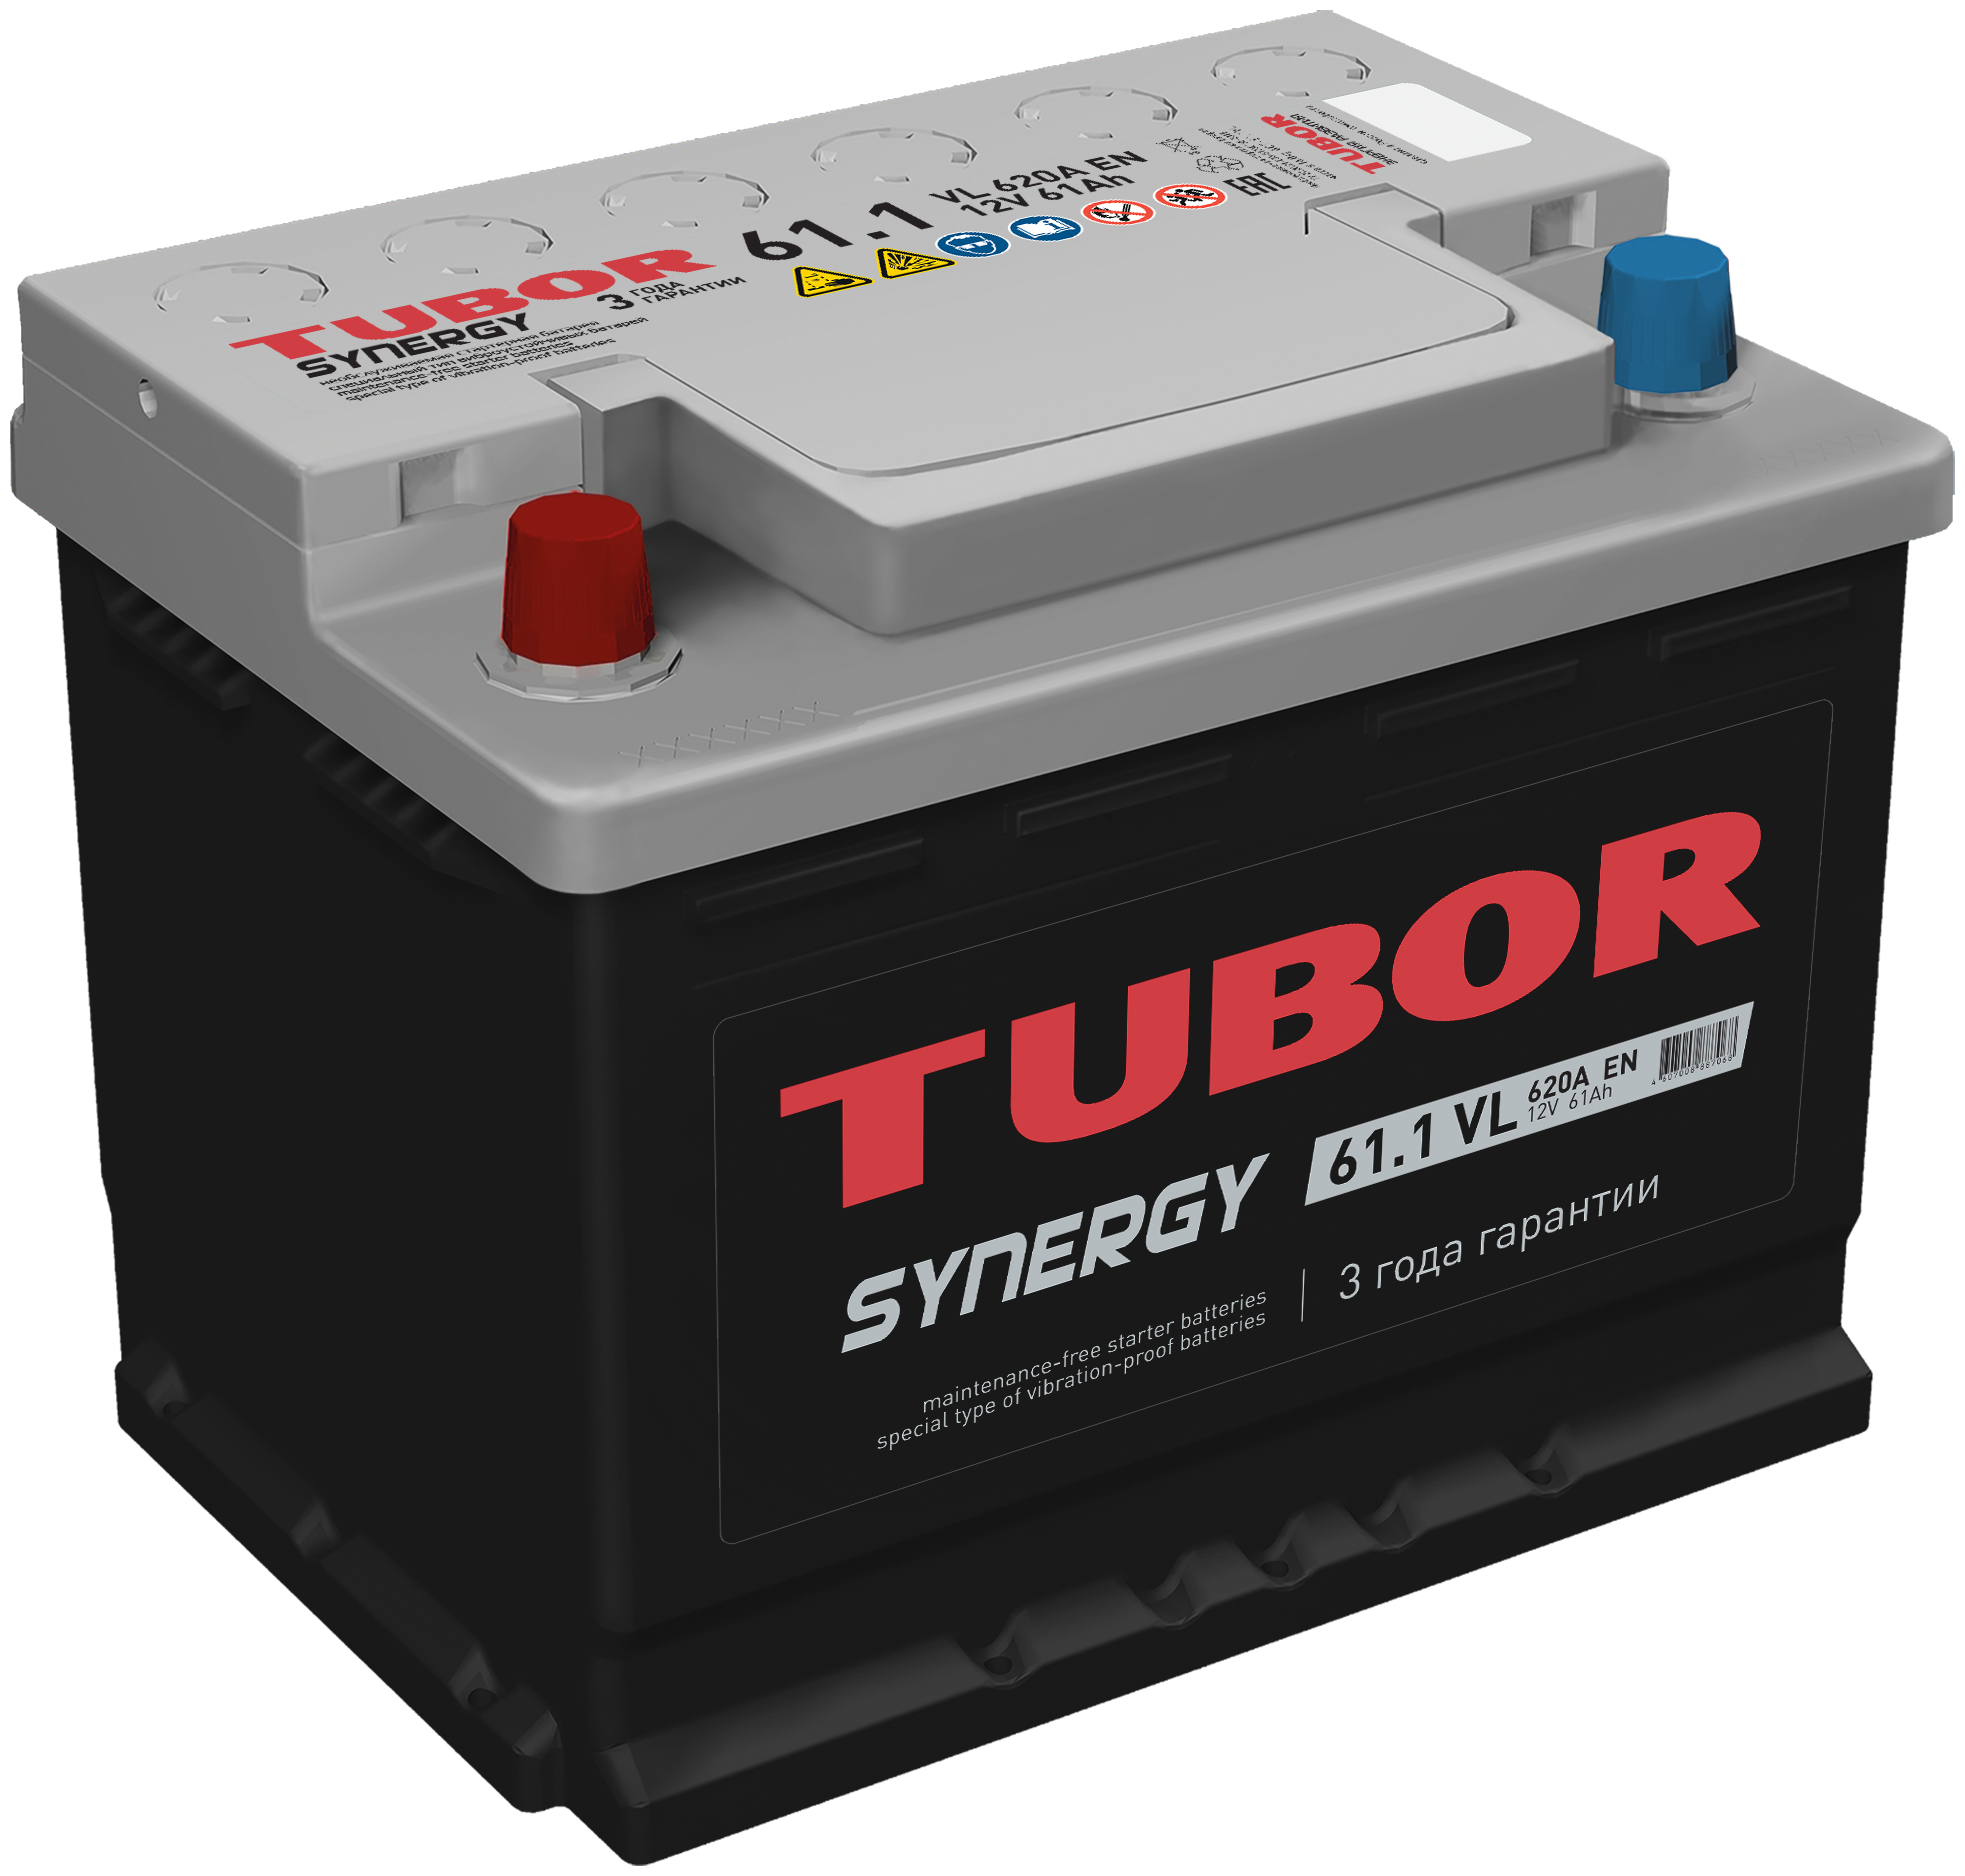 Аккумулятор 61 А/Ч "Tubor" Synergy 600a (Прямая Полярность) L2 (242*175*190)_2021 TUBOR арт. 4607008887068_2021